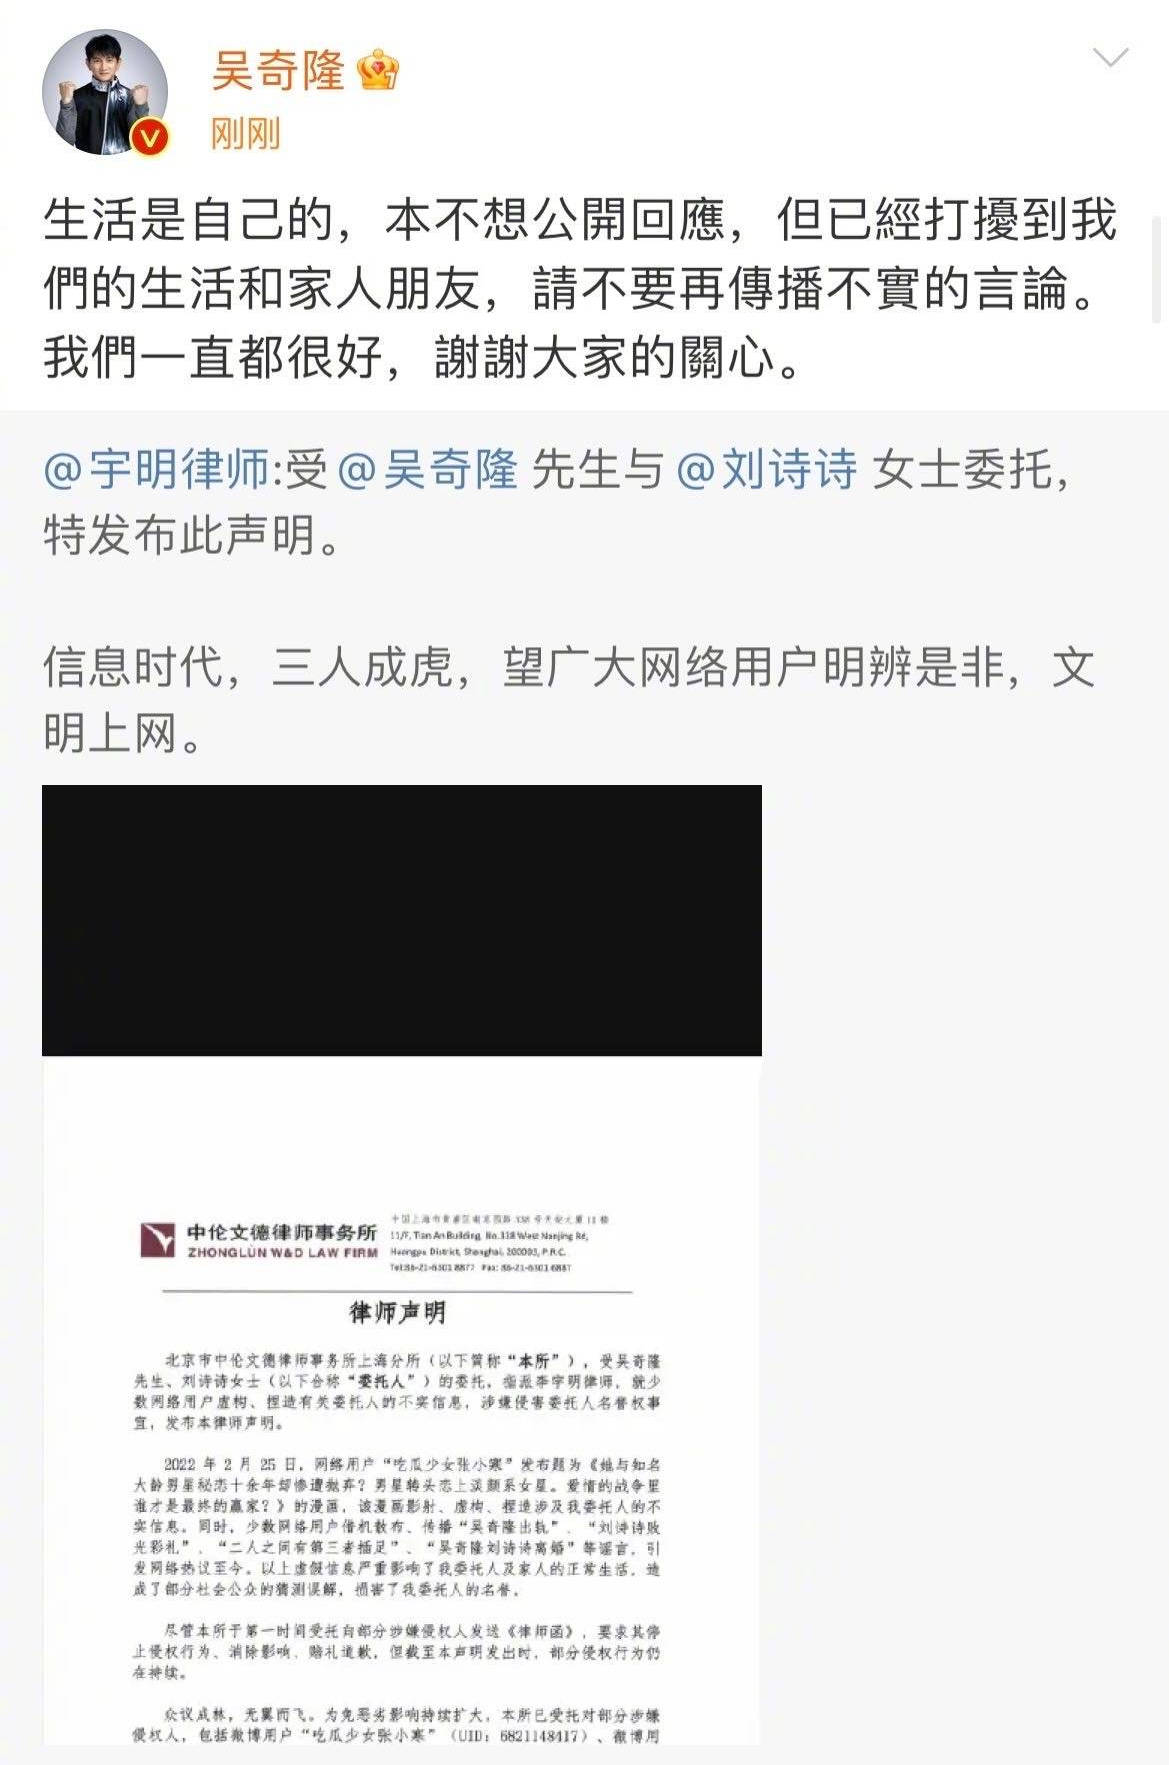 吴奇隆刘诗诗委托律师发布声明 夫妇两人转发文案相同